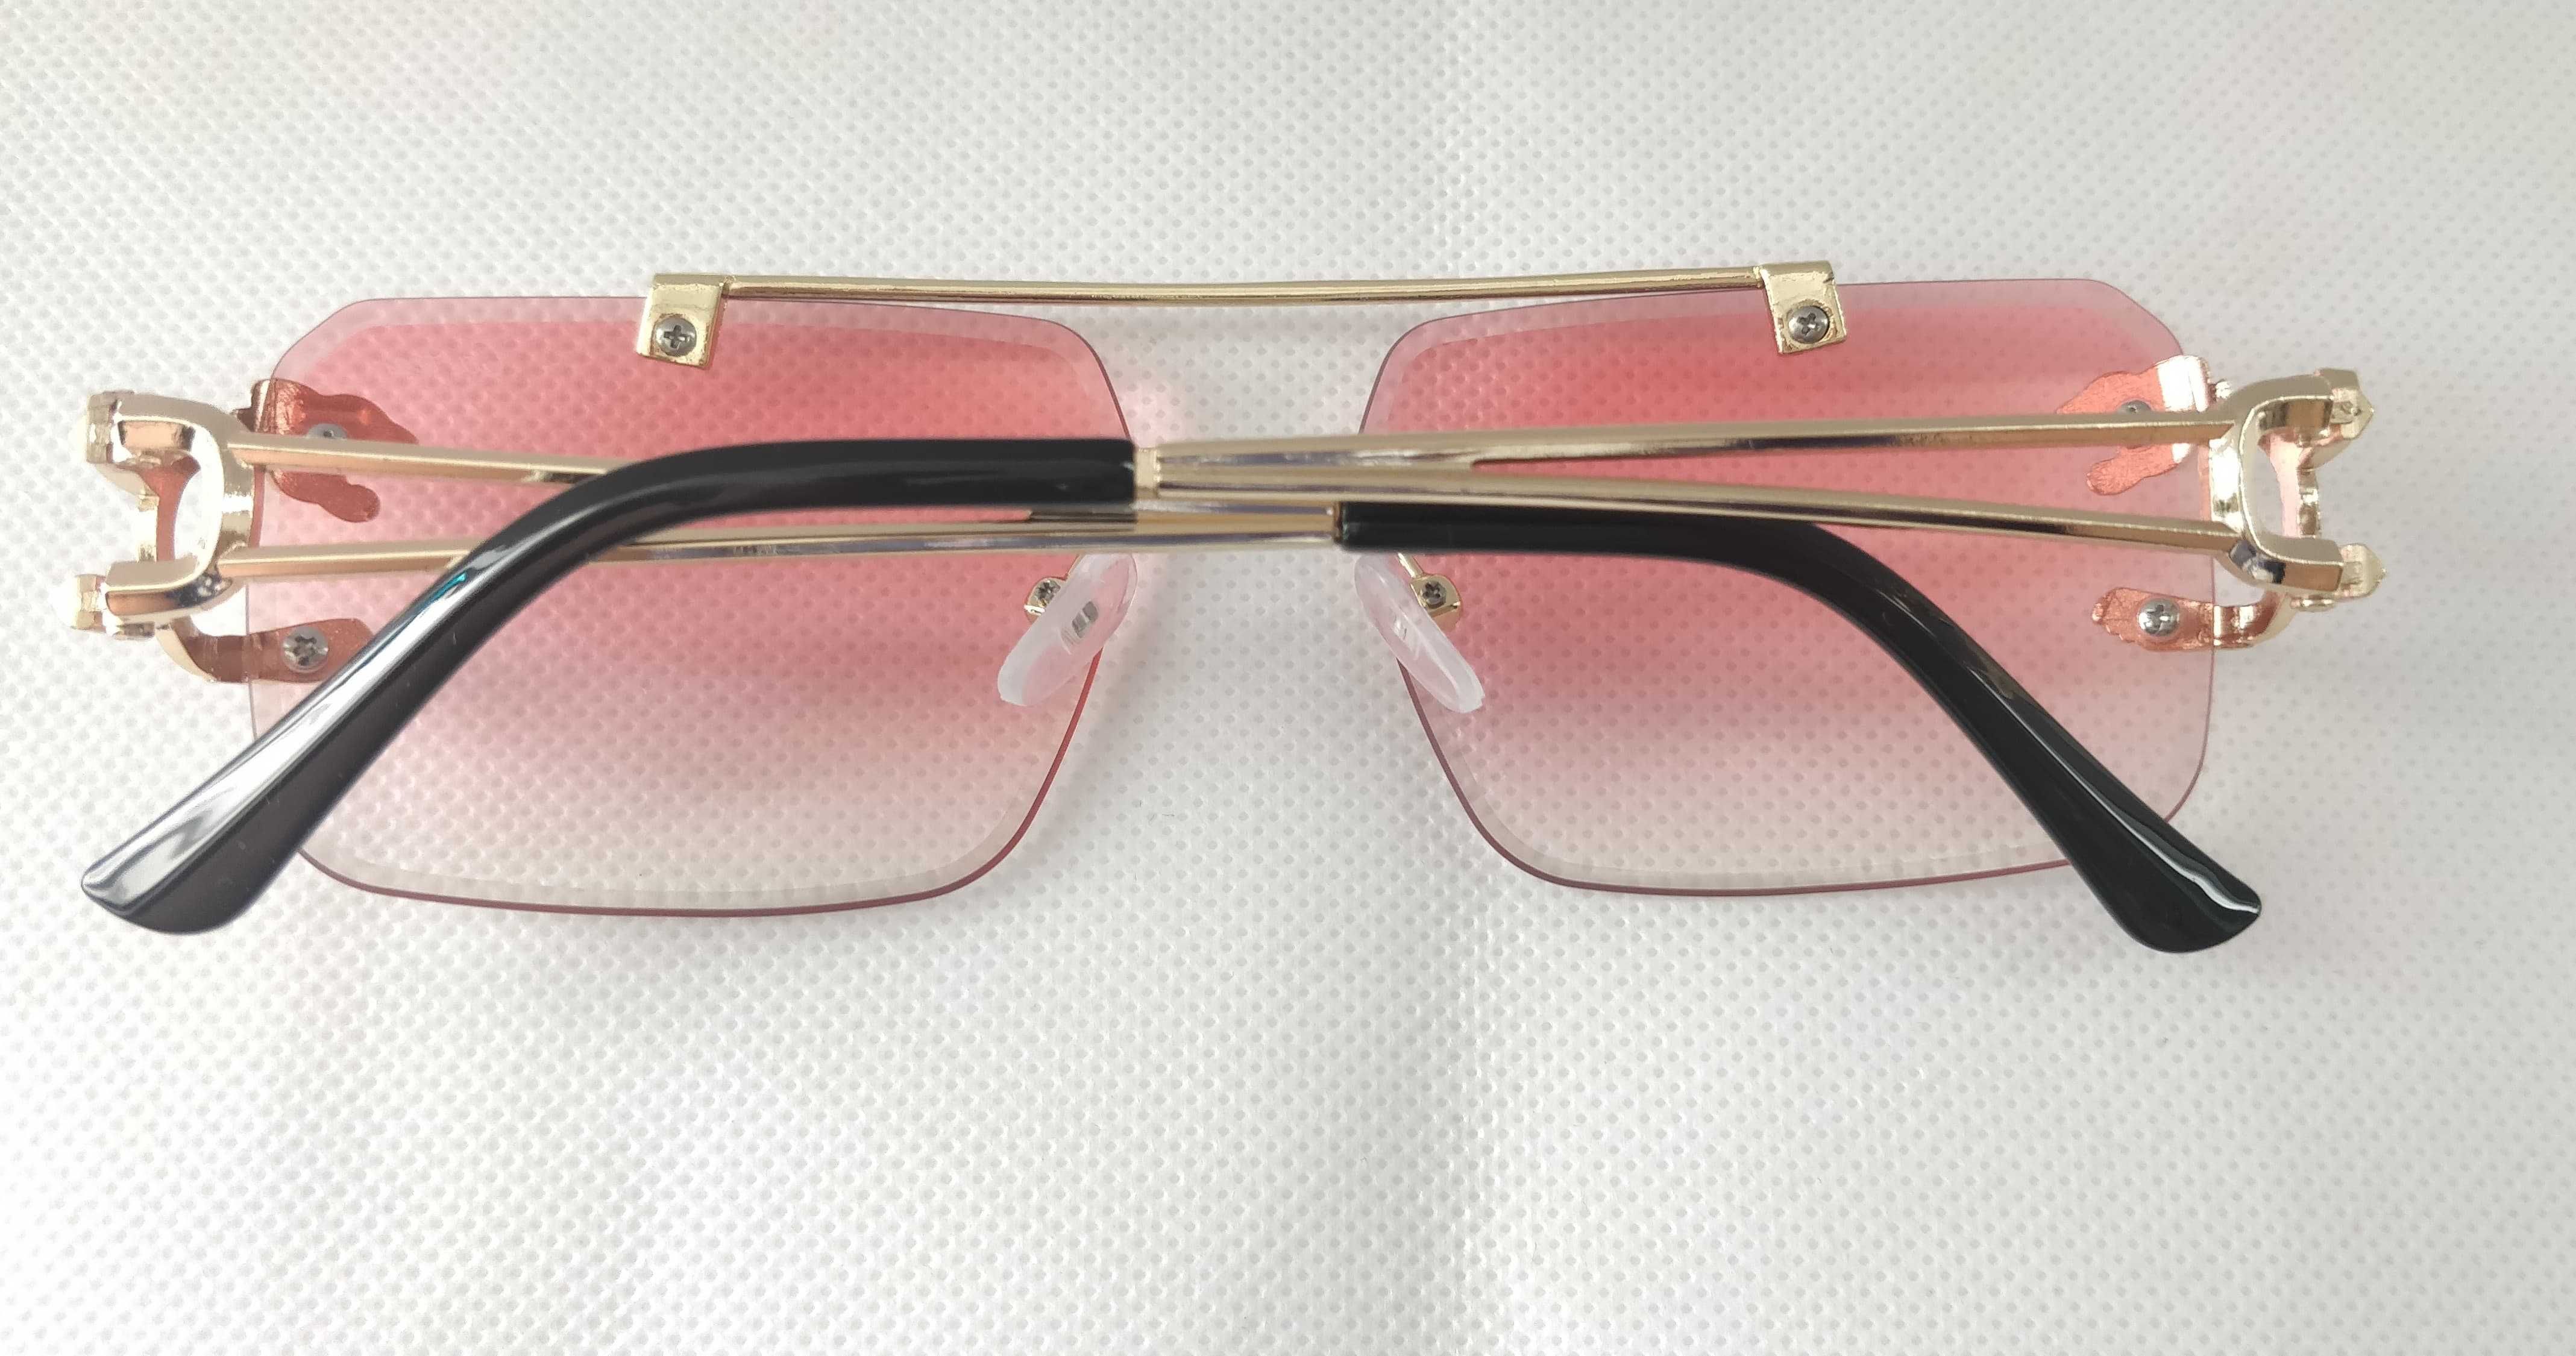 Ochelari de soare Cartier model 2, lentile roz, rama aurie